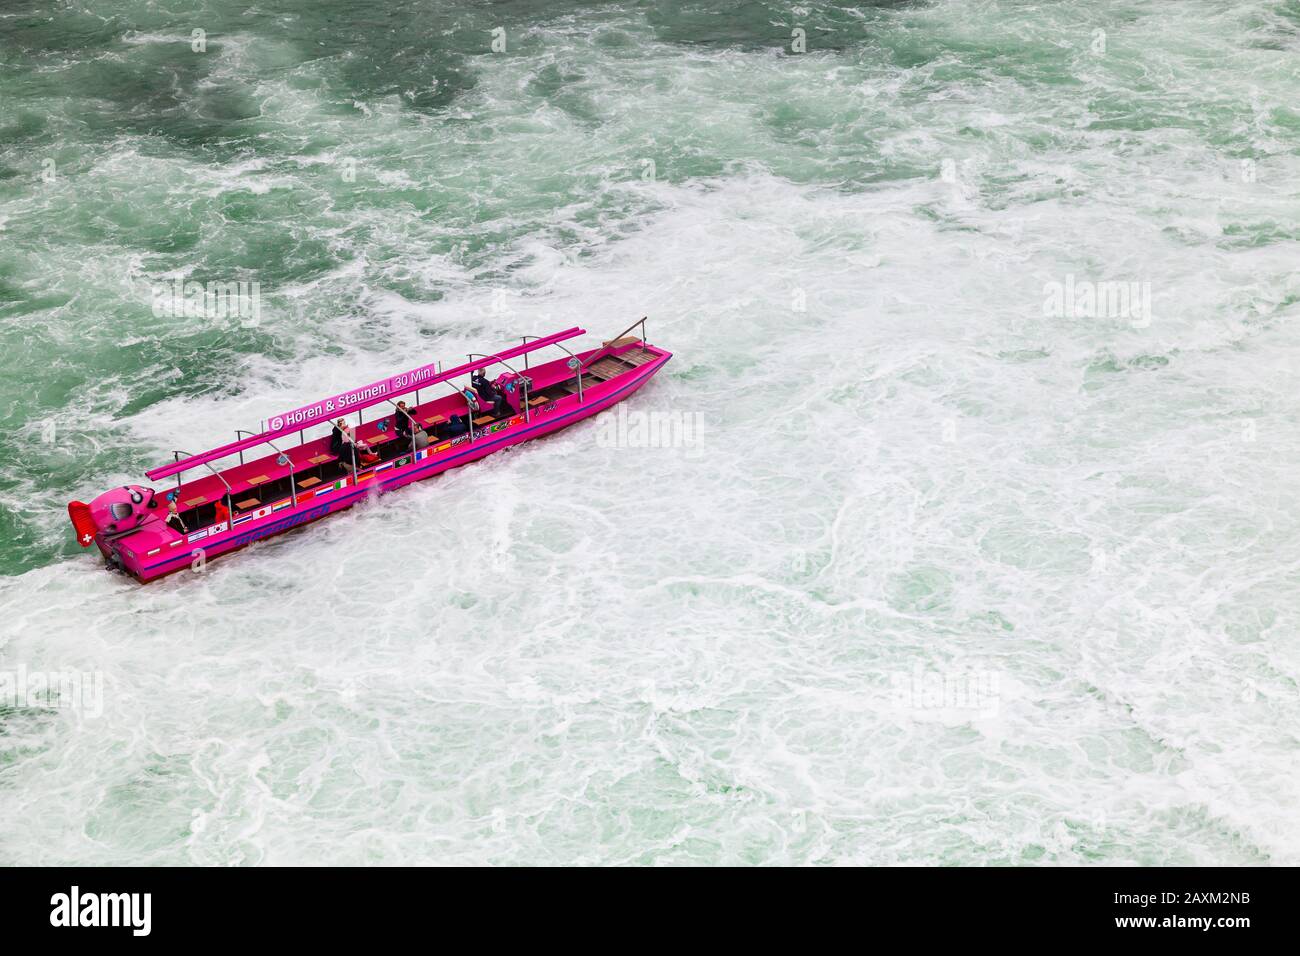 Cascate del Reno, Svizzera - 6 maggio 2017: Gita in barca alle cascate del Reno, i turisti sono in motoscafo rosa sulle acque in difficoltà Foto Stock